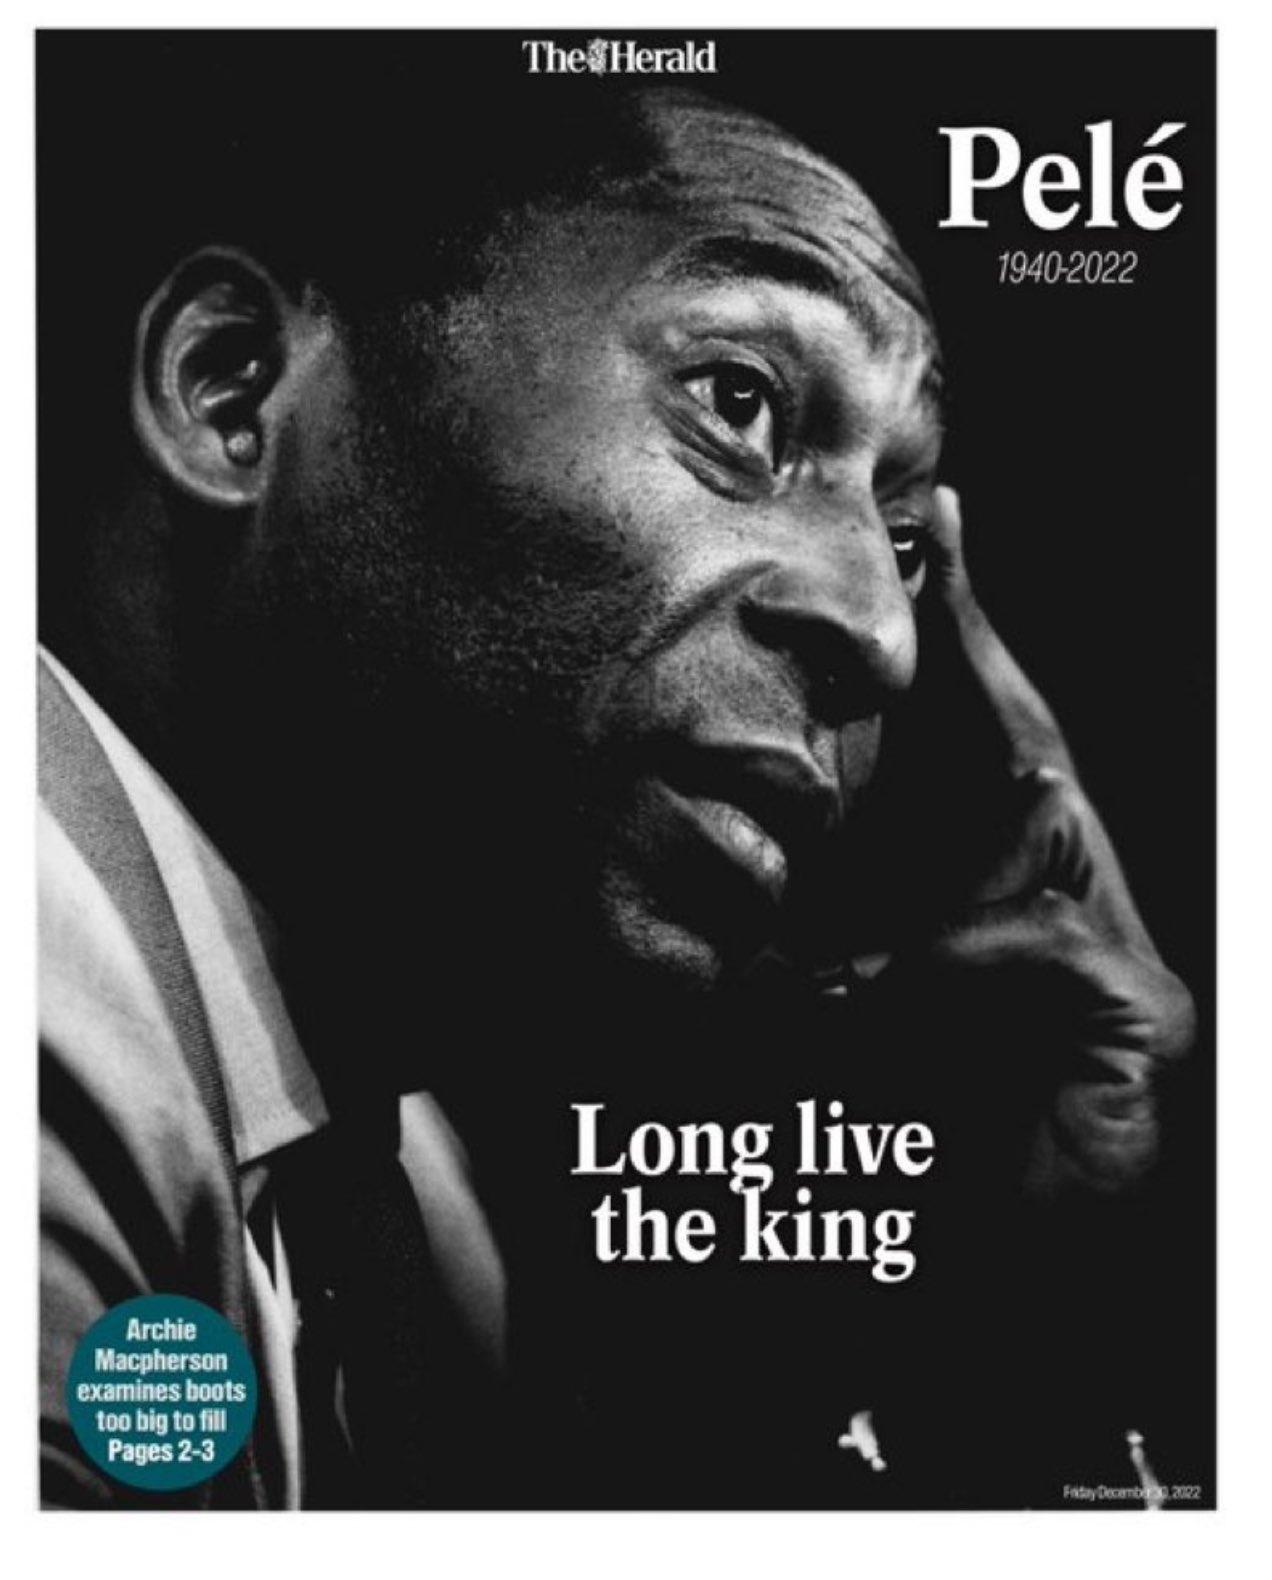 Imagem mostra foto de Pelé.